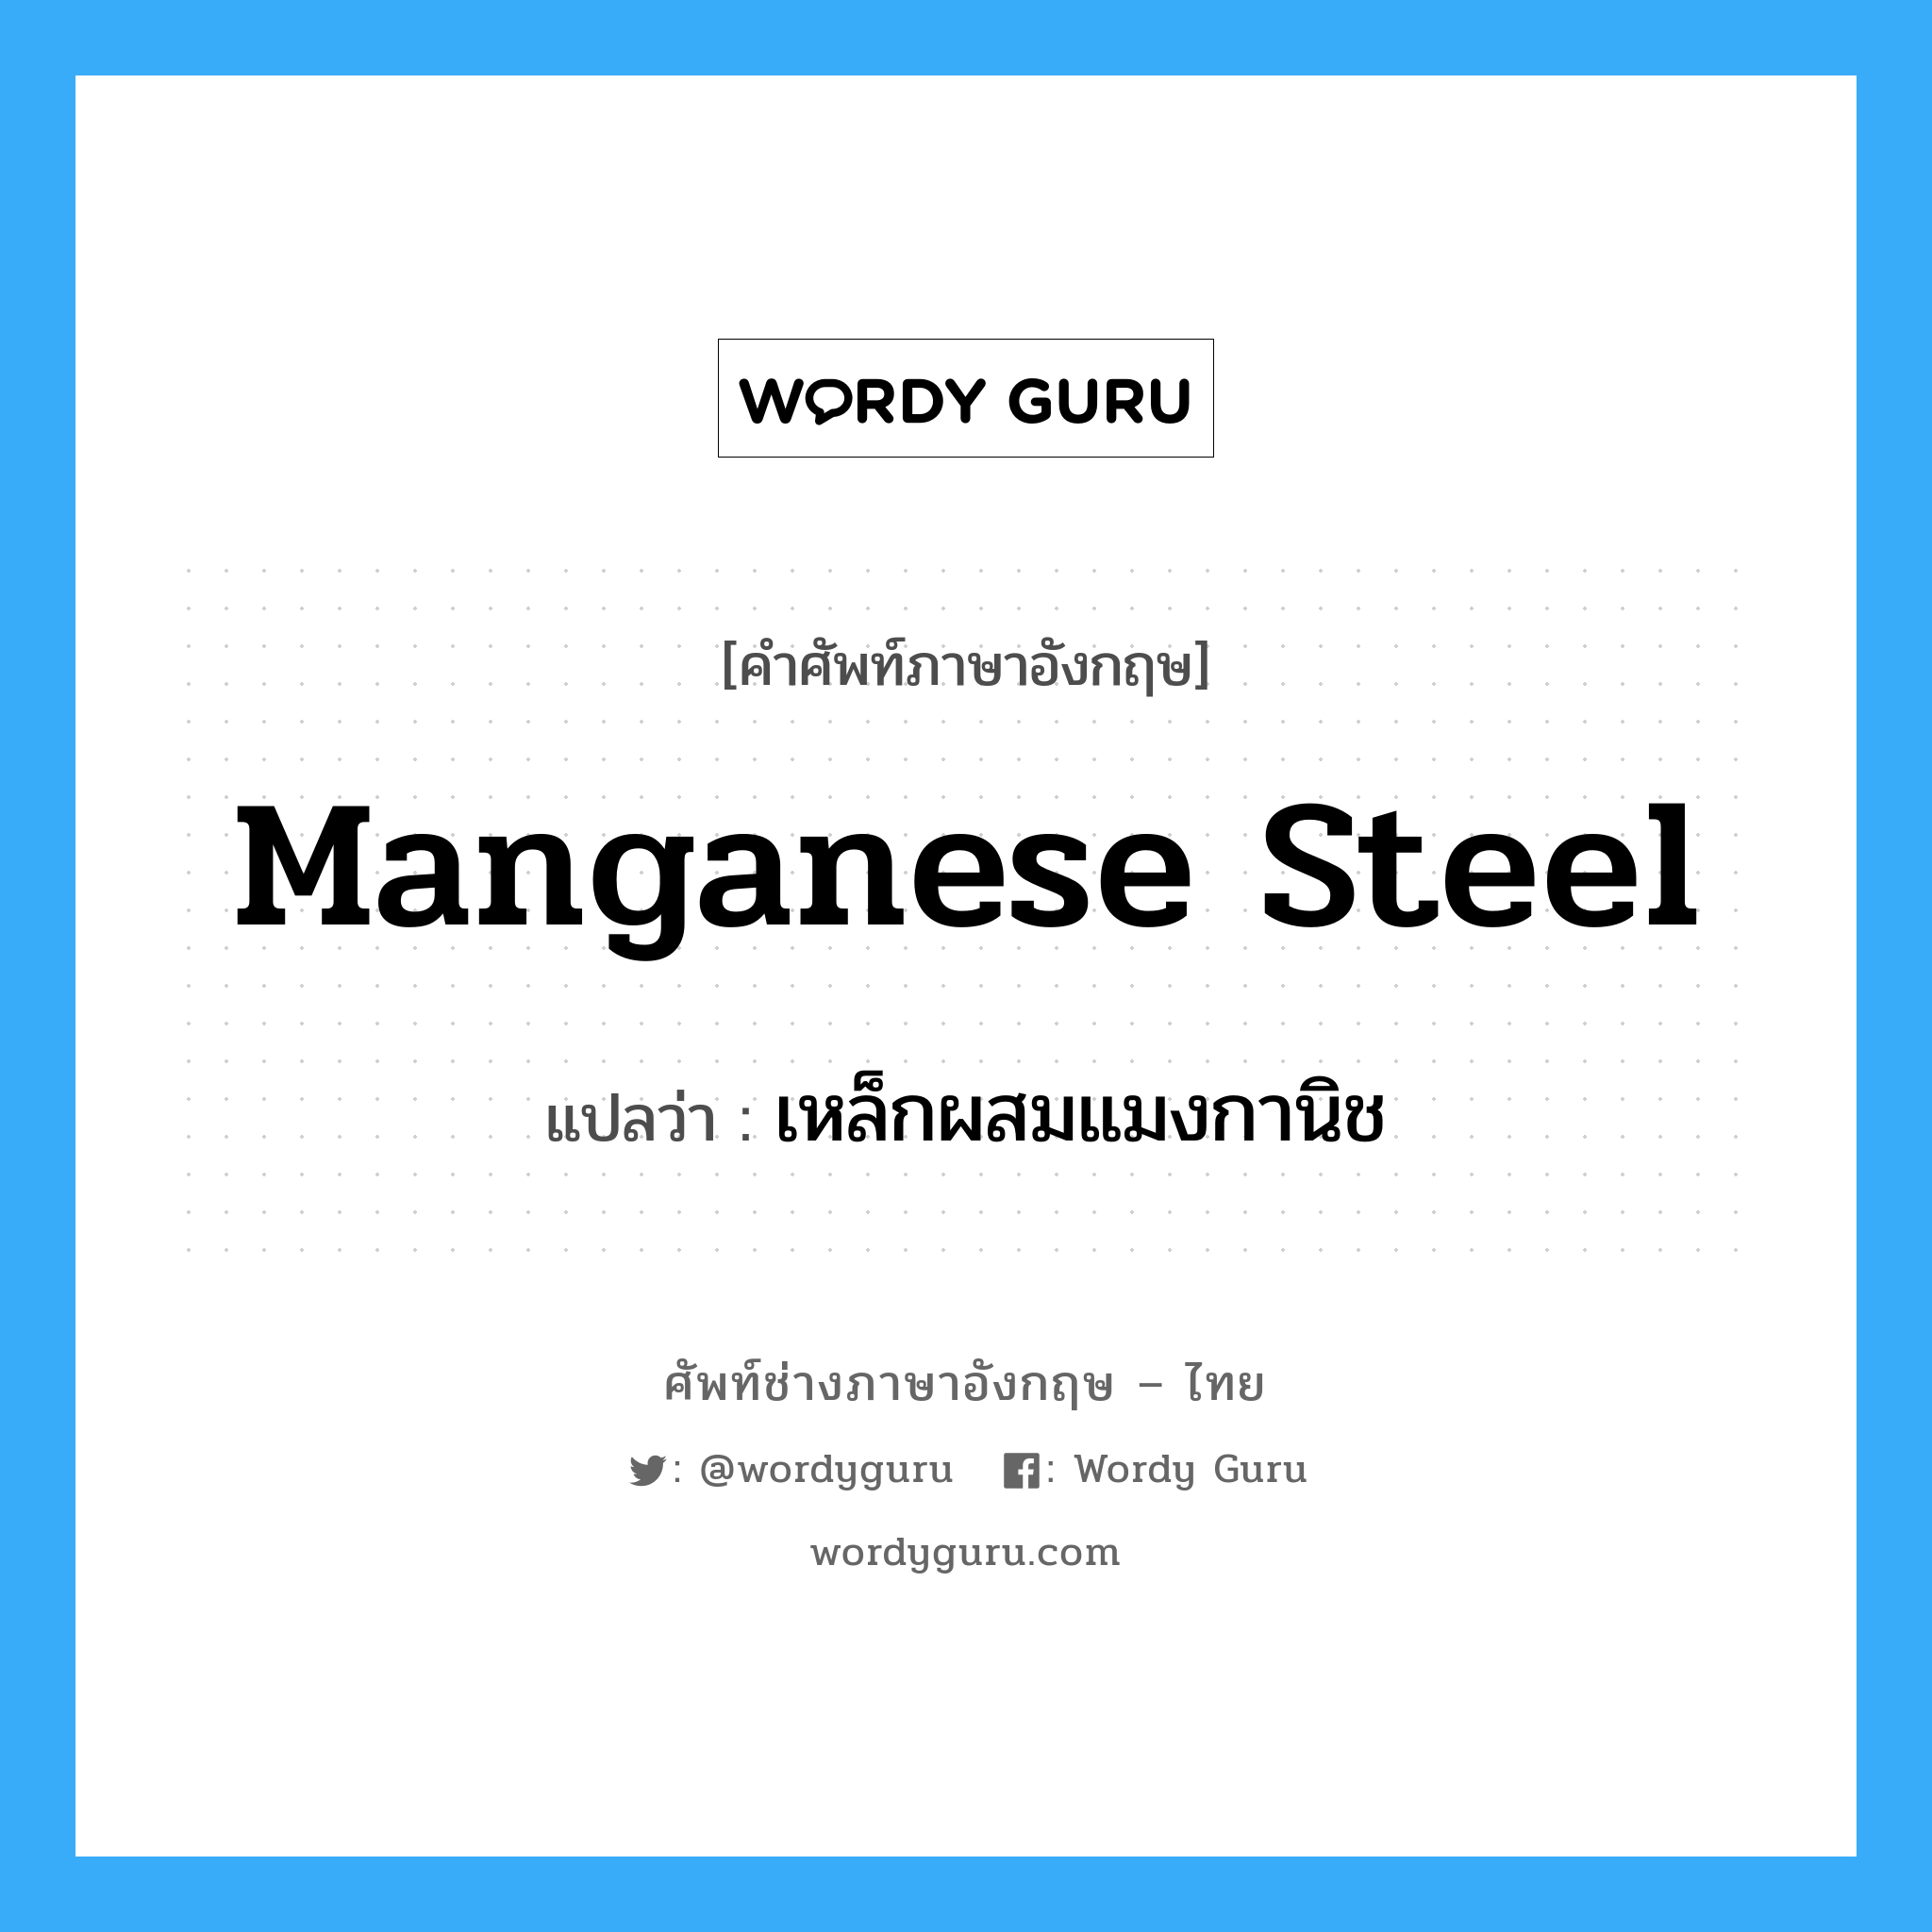 manganese steel แปลว่า?, คำศัพท์ช่างภาษาอังกฤษ - ไทย manganese steel คำศัพท์ภาษาอังกฤษ manganese steel แปลว่า เหล็กผสมแมงกานิช